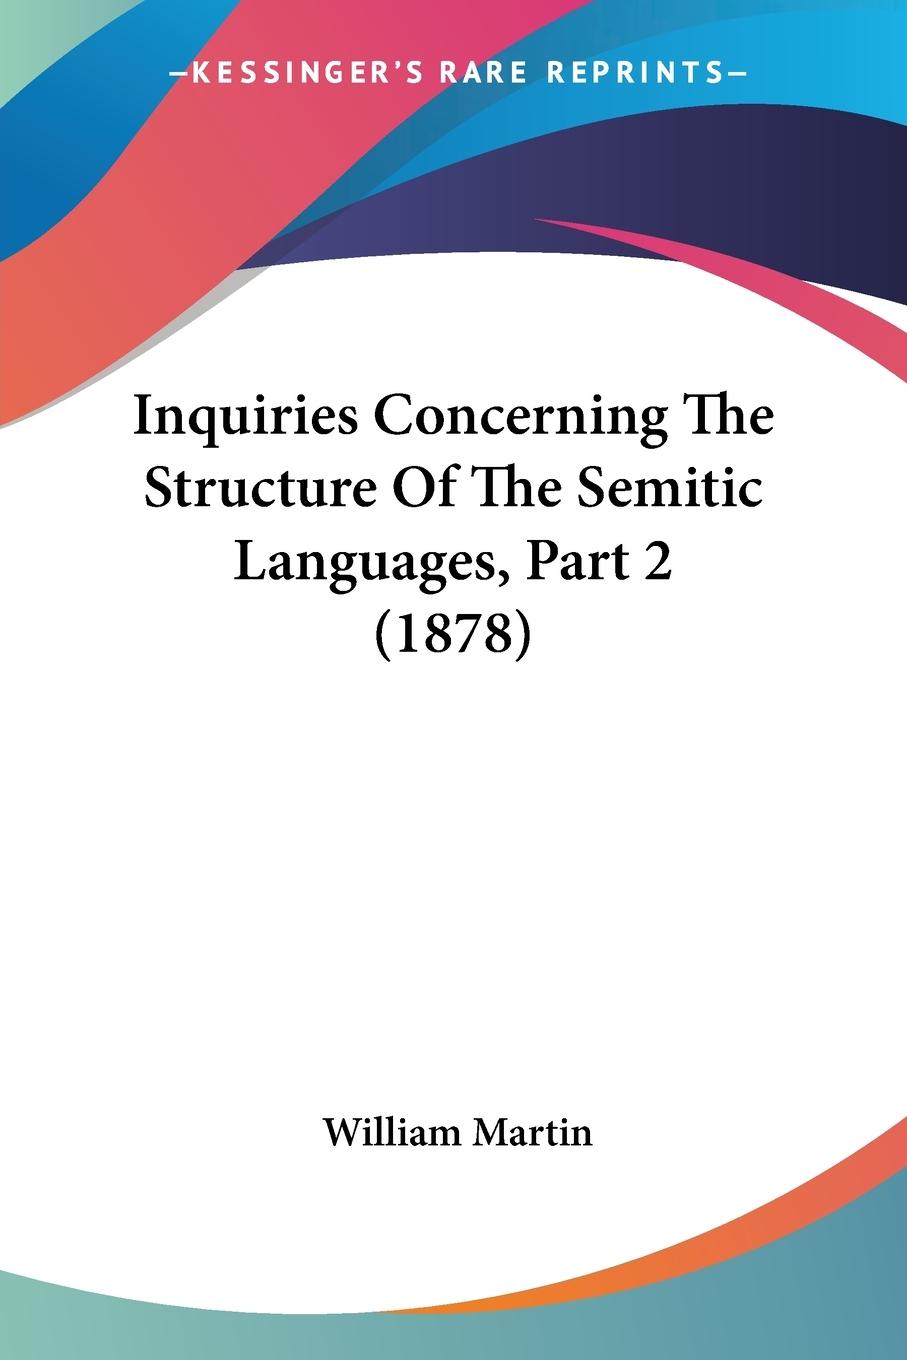 Inquiries Concerning The Structure Of The Semitic Languages, Part 2 (1878) - Martin, William